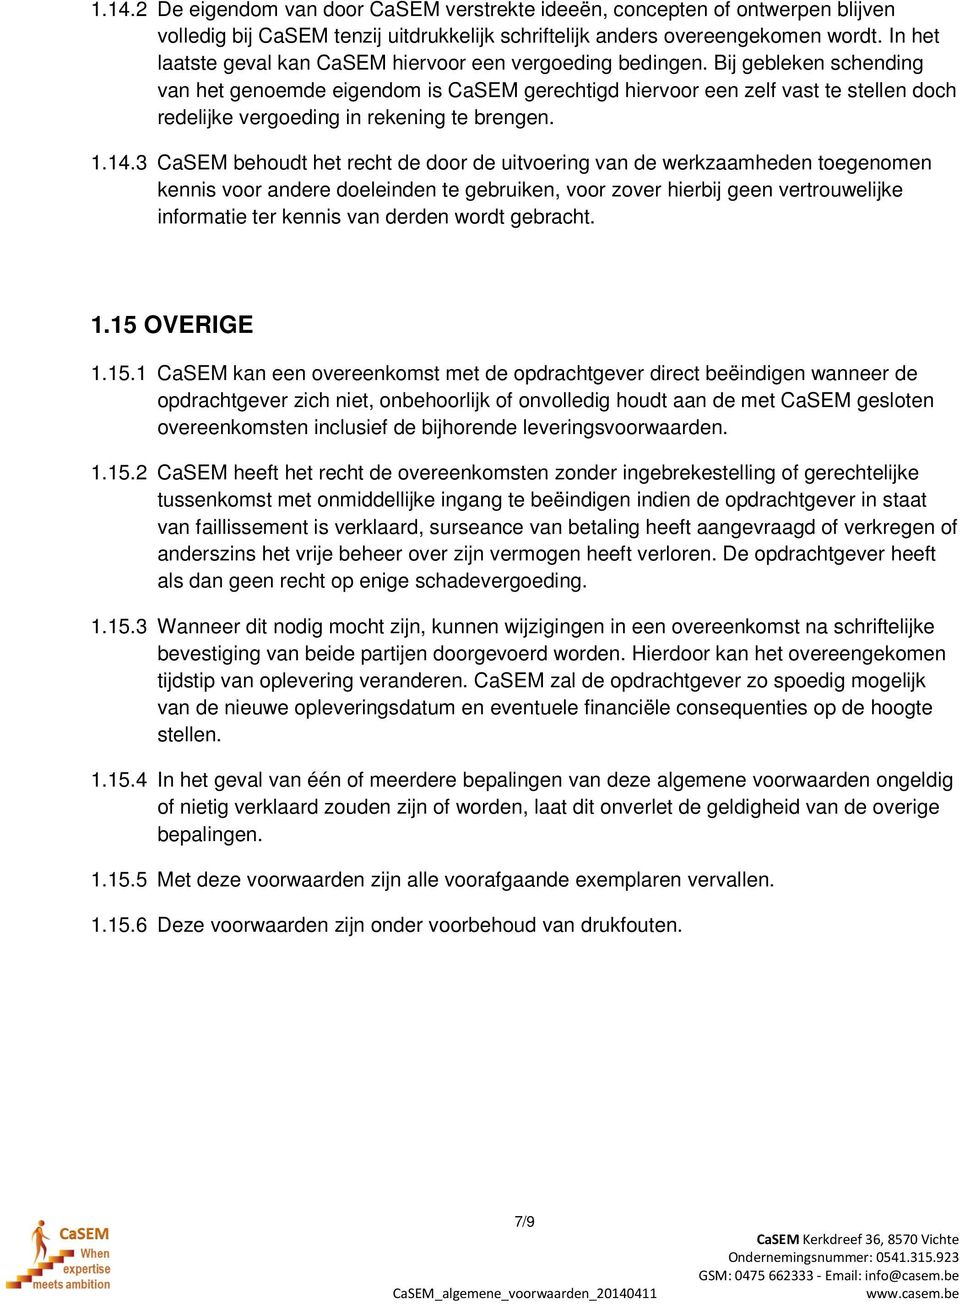 Bij gebleken schending van het genoemde eigendom is CaSEM gerechtigd hiervoor een zelf vast te stellen doch redelijke vergoeding in rekening te brengen. 1.14.